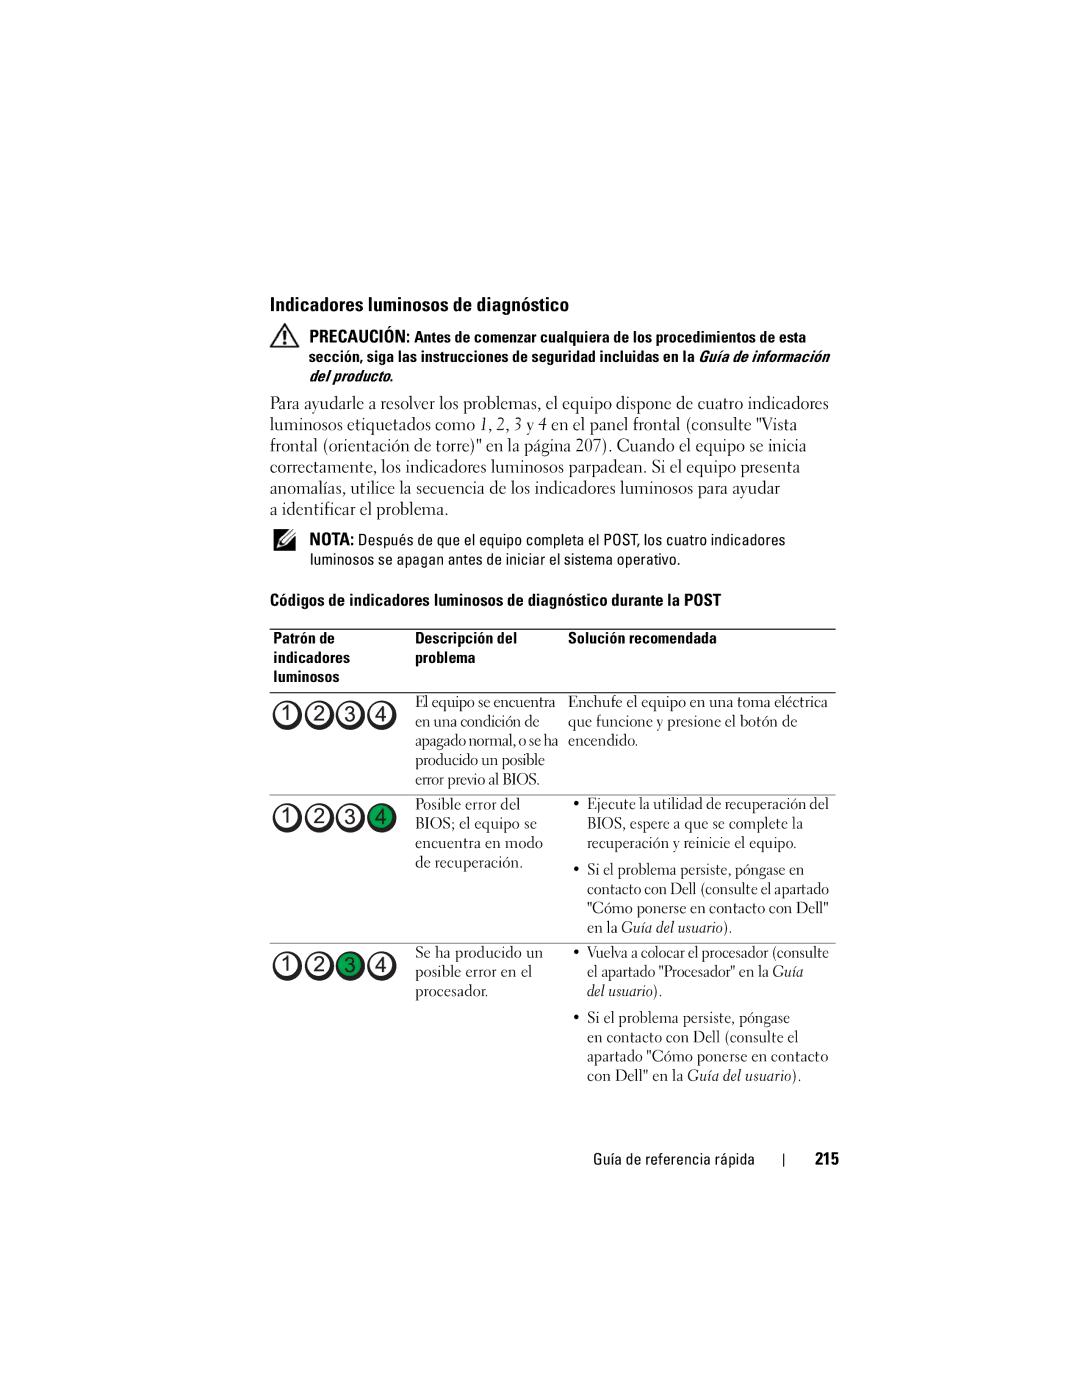 Dell DCDO manual Indicadores luminosos de diagnóstico, 215 